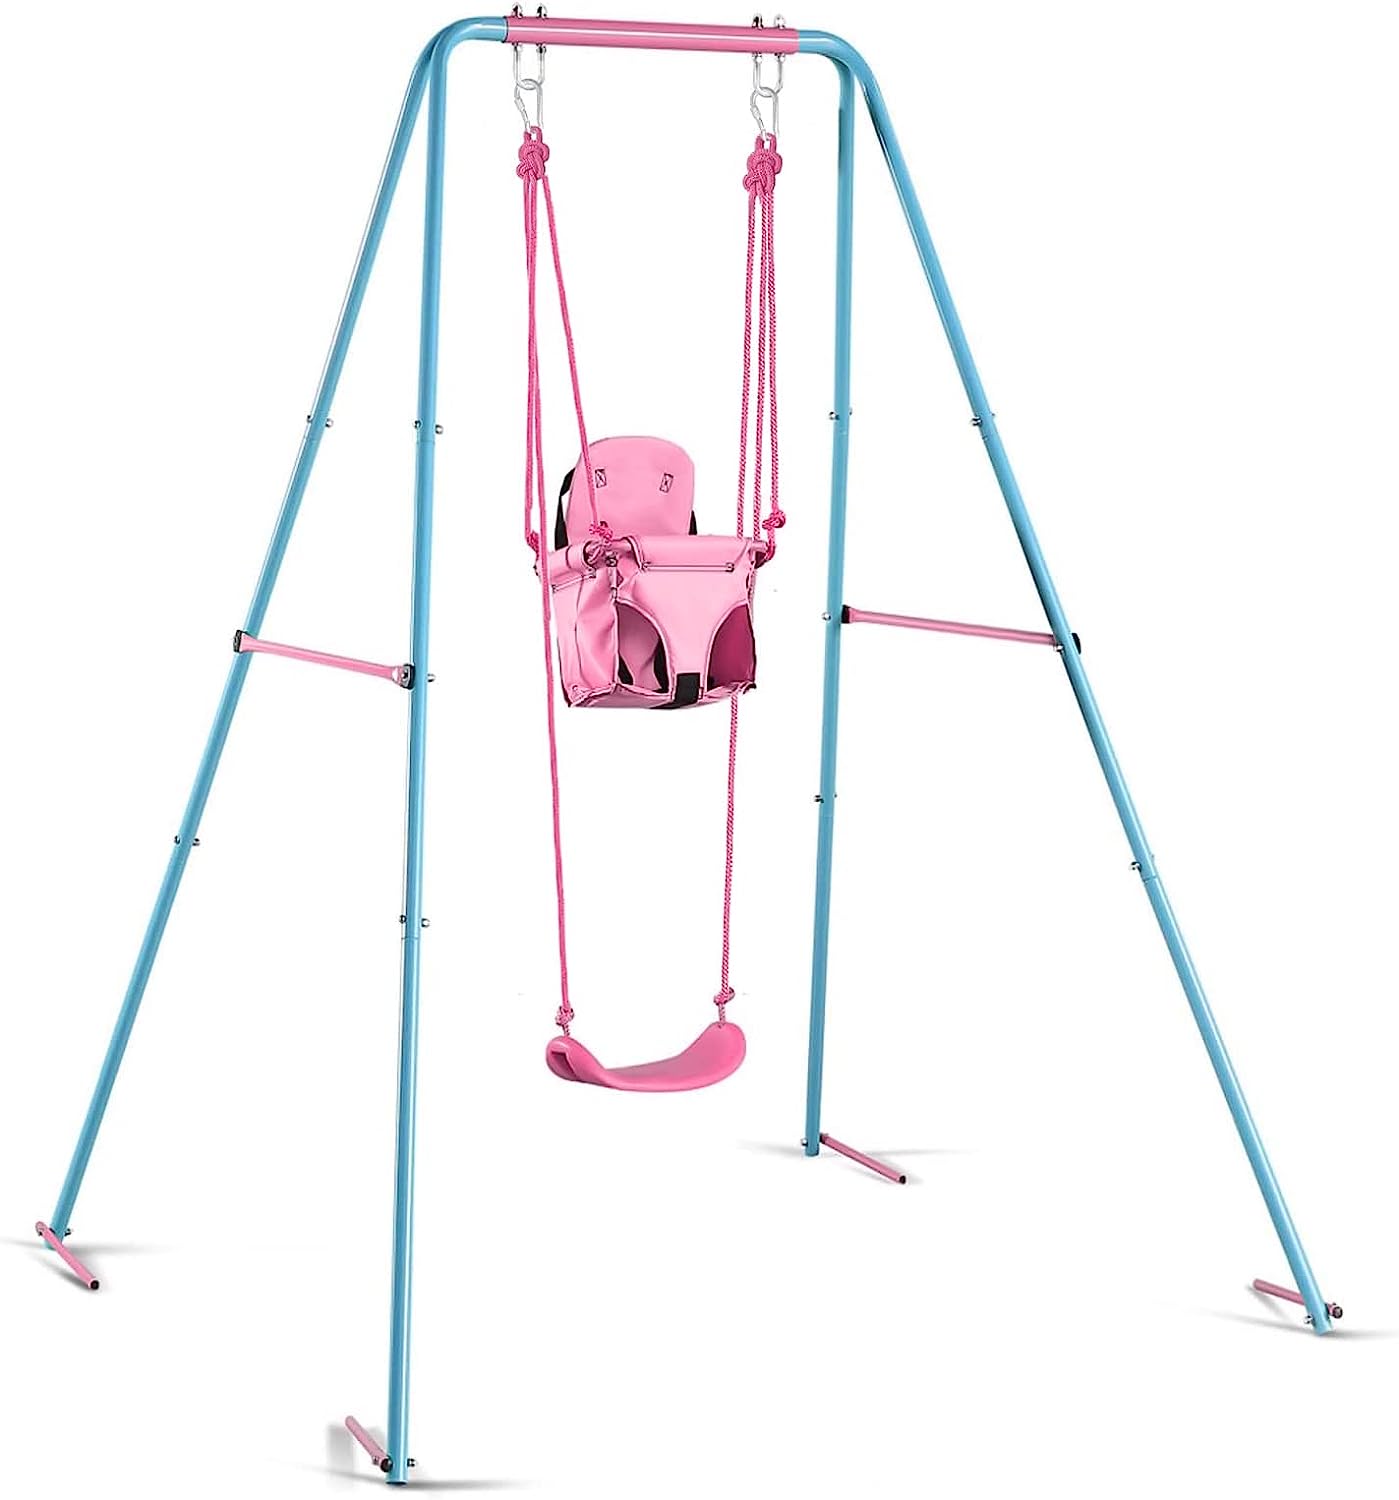 Kiriner Swing Set Outdoor Swings for Kids Toddlers [...]